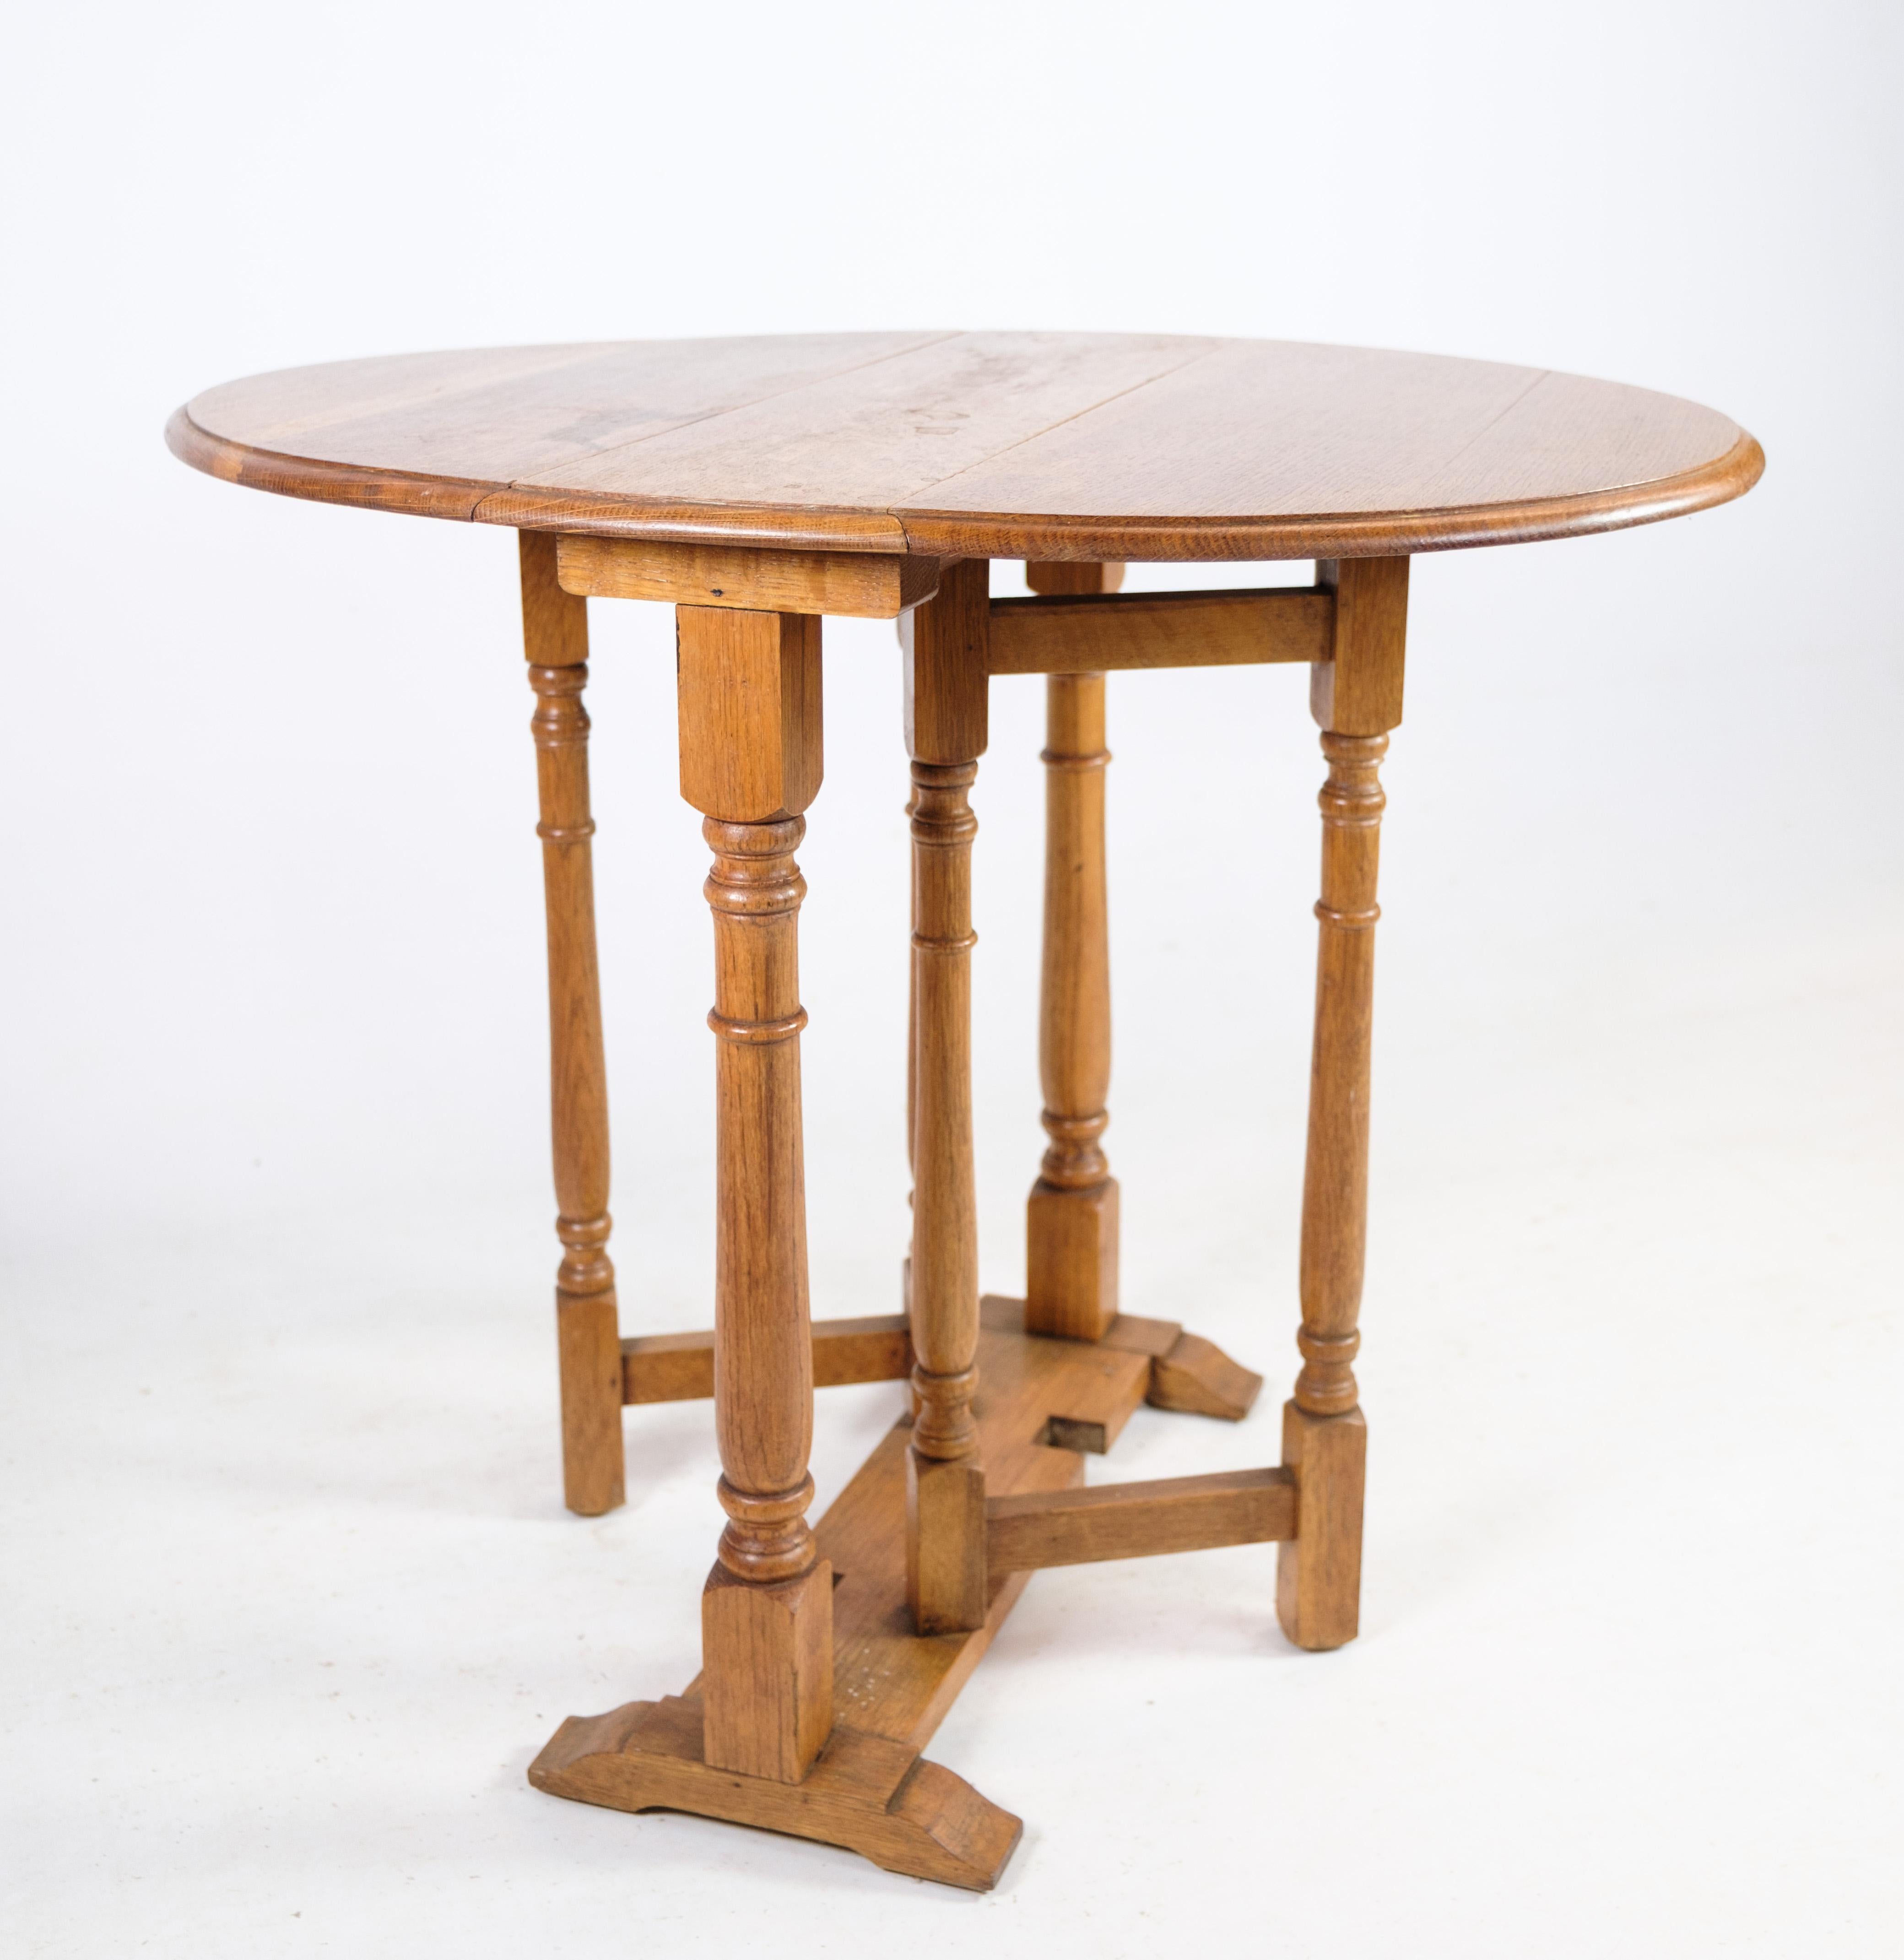 Cette exquise table pliante remonte à la fin du XIXe siècle et présente l'élégance intemporelle et la robustesse de l'artisanat caractéristiques de l'ère victorienne. Fabriquée en bois de chêne massif, cette table dégage chaleur et caractère, avec